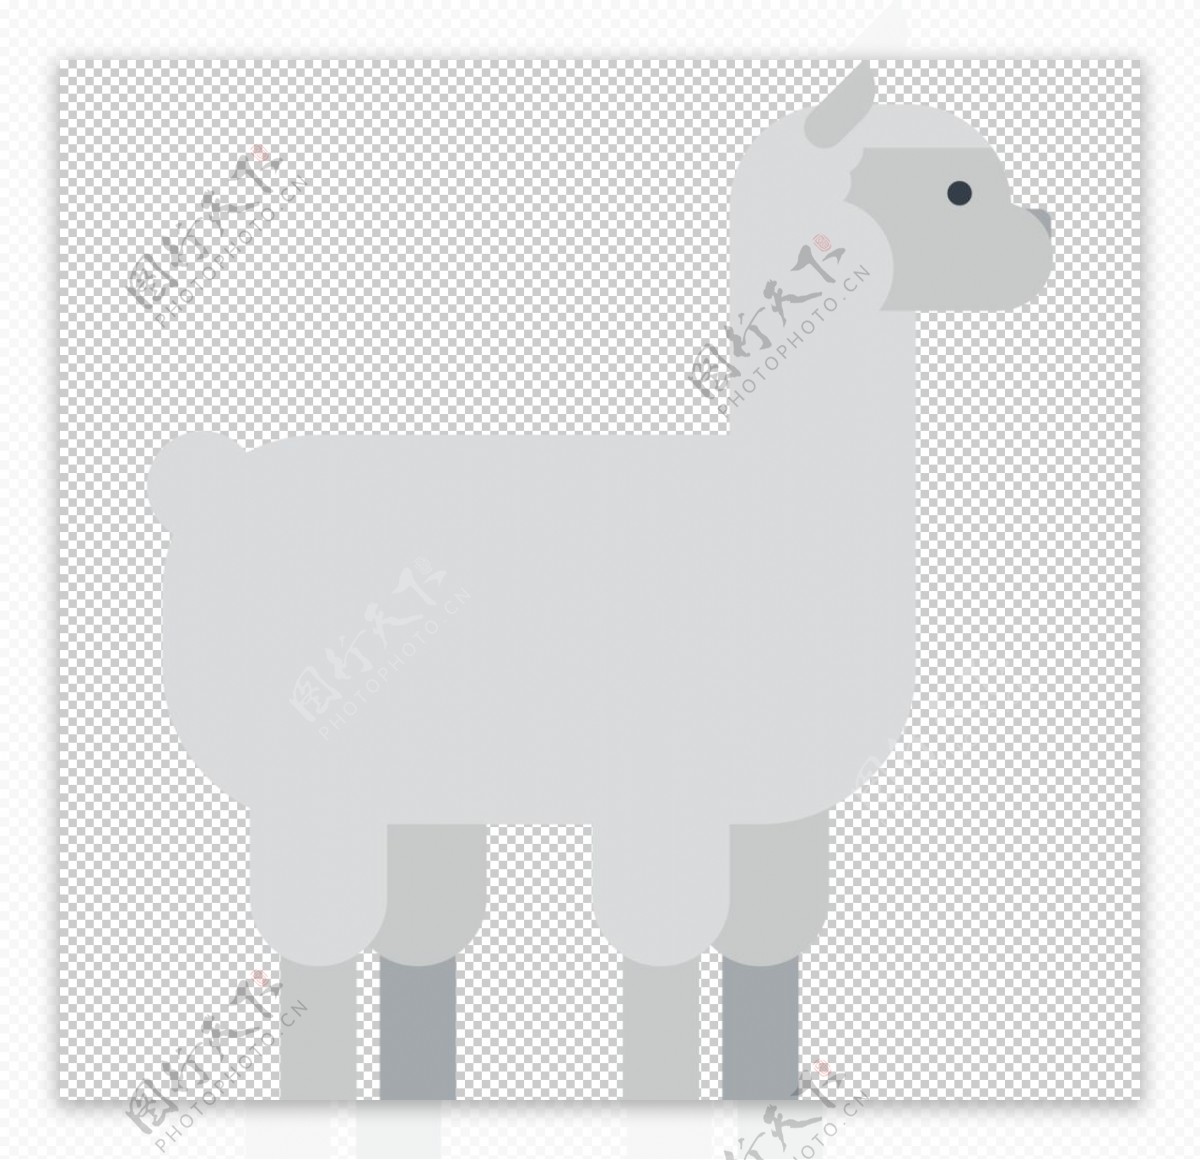 羊驼动物标志图形图标装饰素材